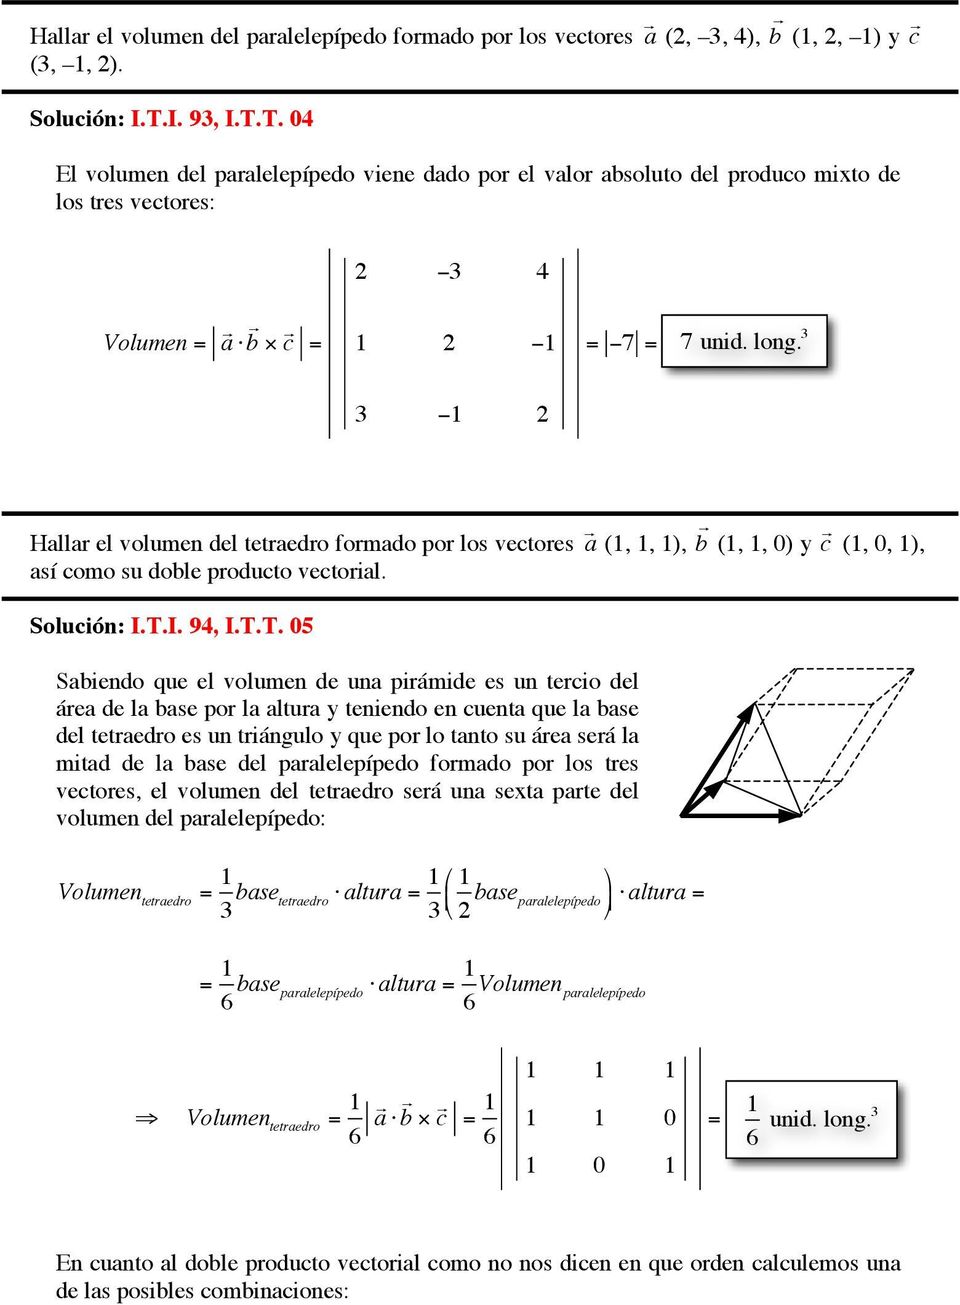 3 3 1 Hallar el volumen del tetraedro formado por los vectores a (1, 1, 1), así como su doble producto vectorial. Solución: I.T.